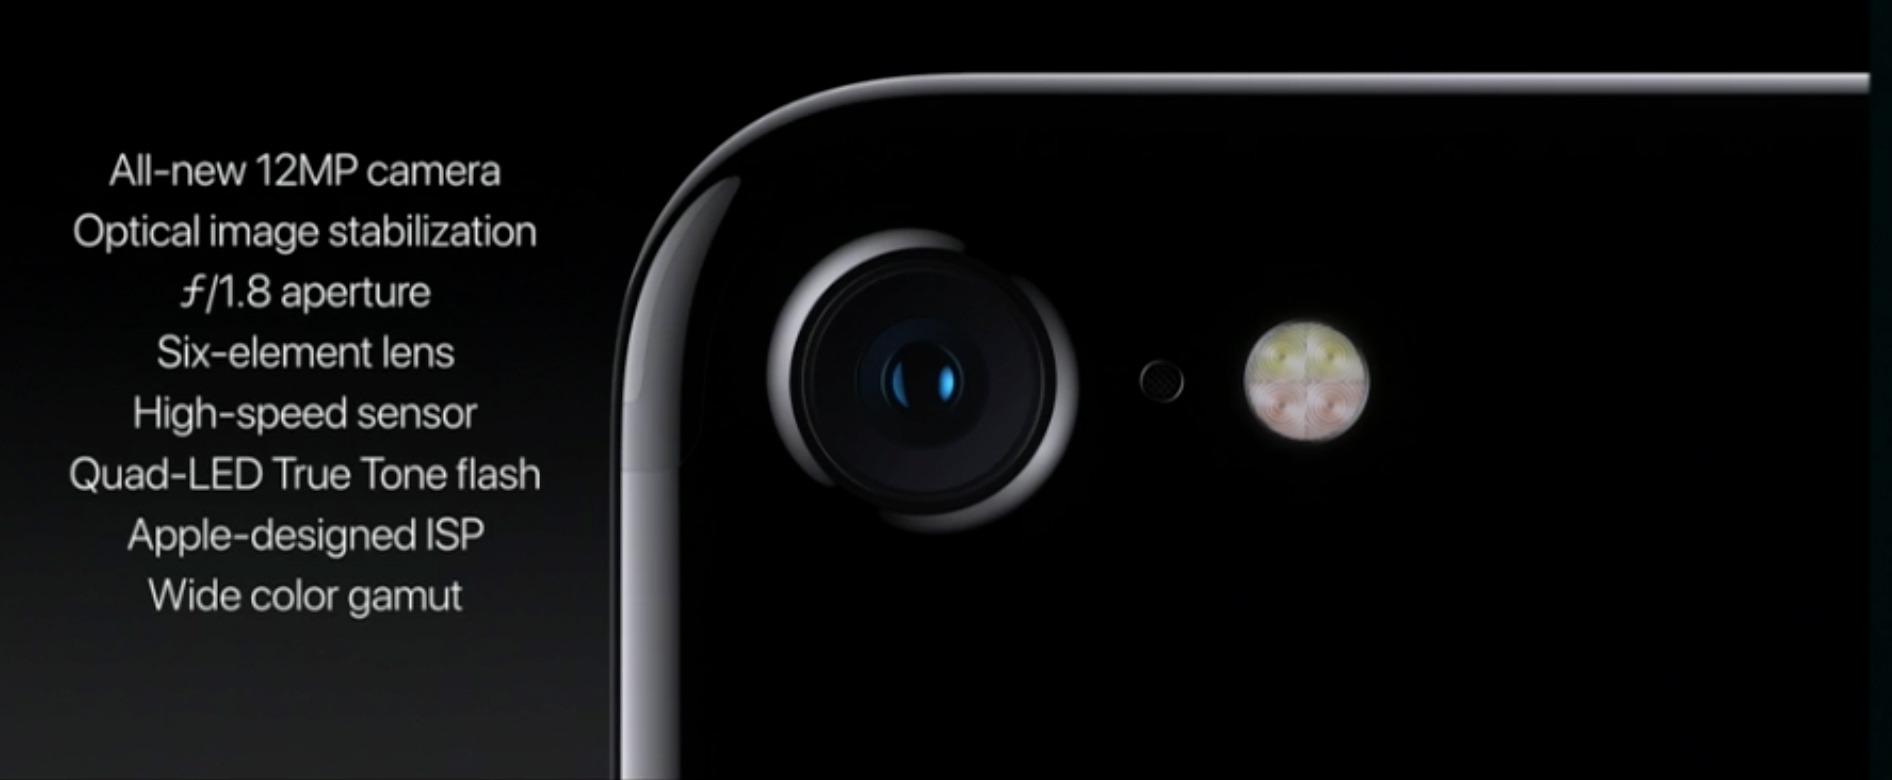 Det nye kameraet til iPhone 7 blir en kraftig oppgradering.